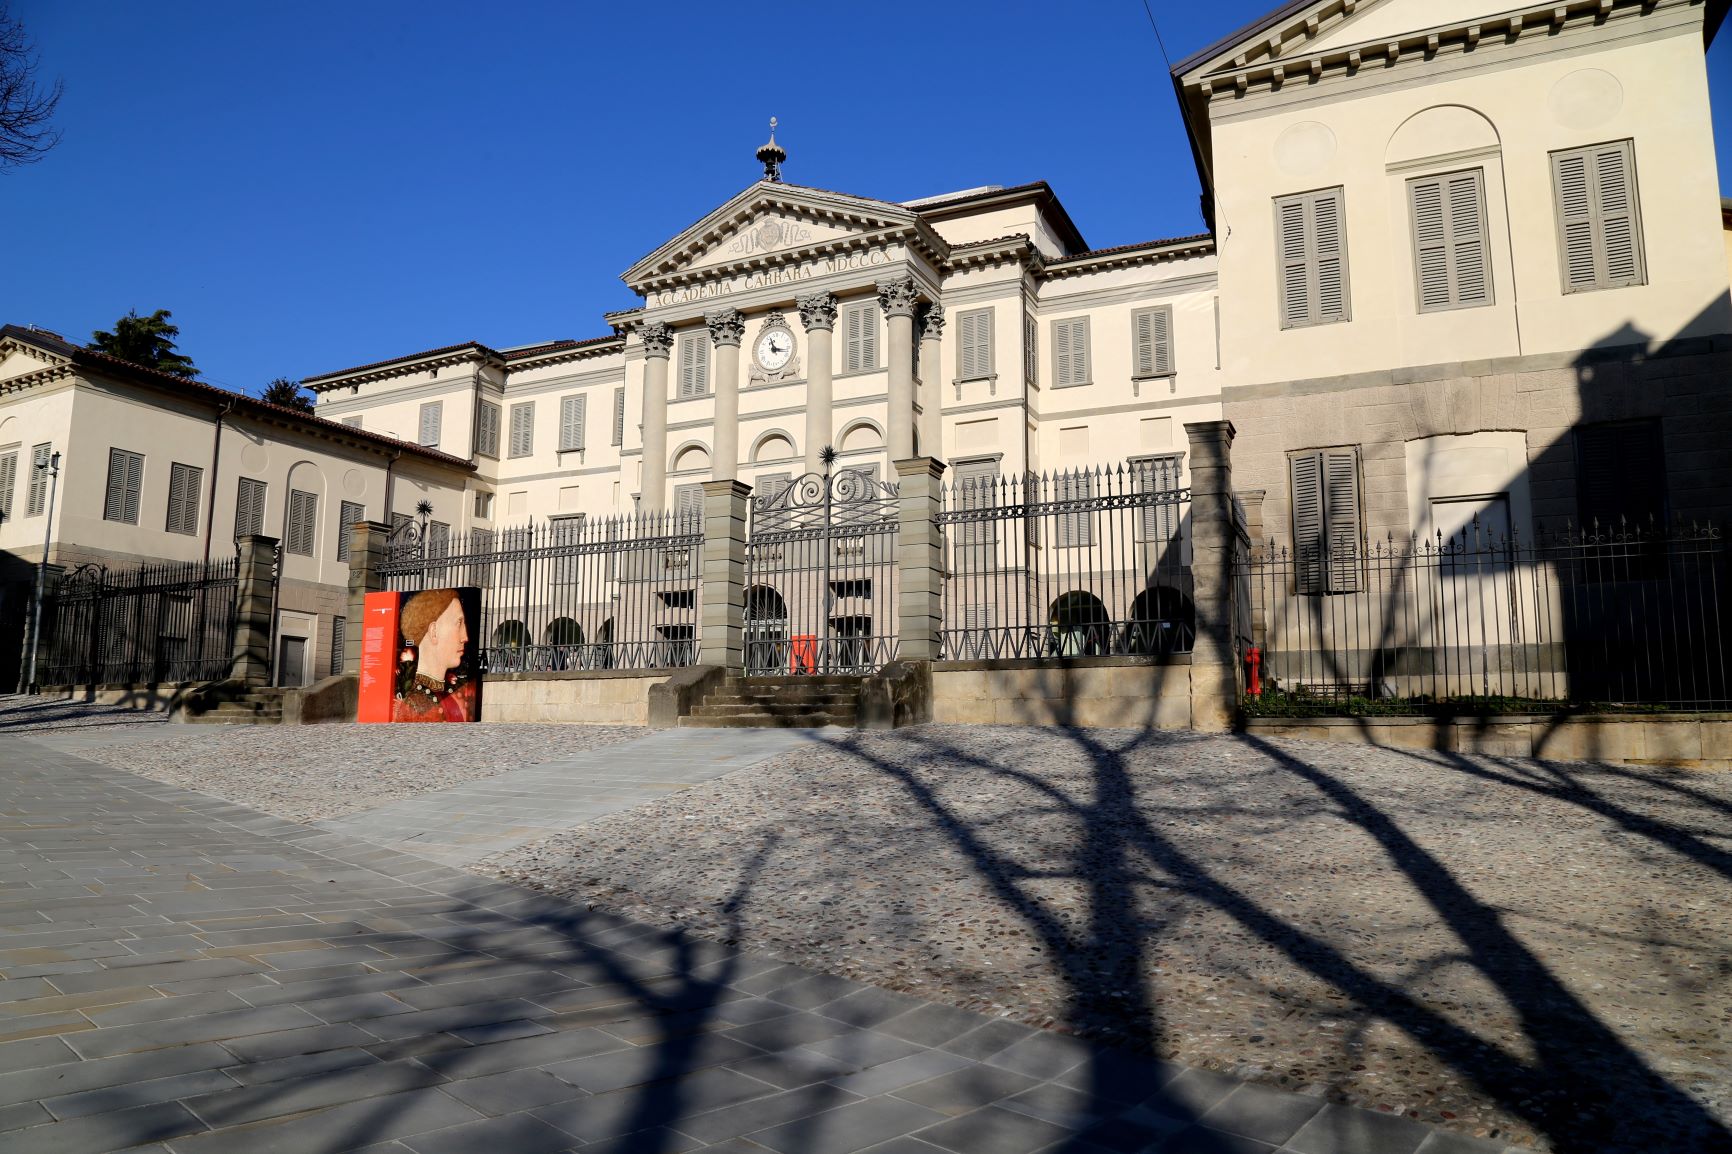 La nuova normalità dei musei. Intervista a Maria Cristina Rodeschini, Accademia Carrara